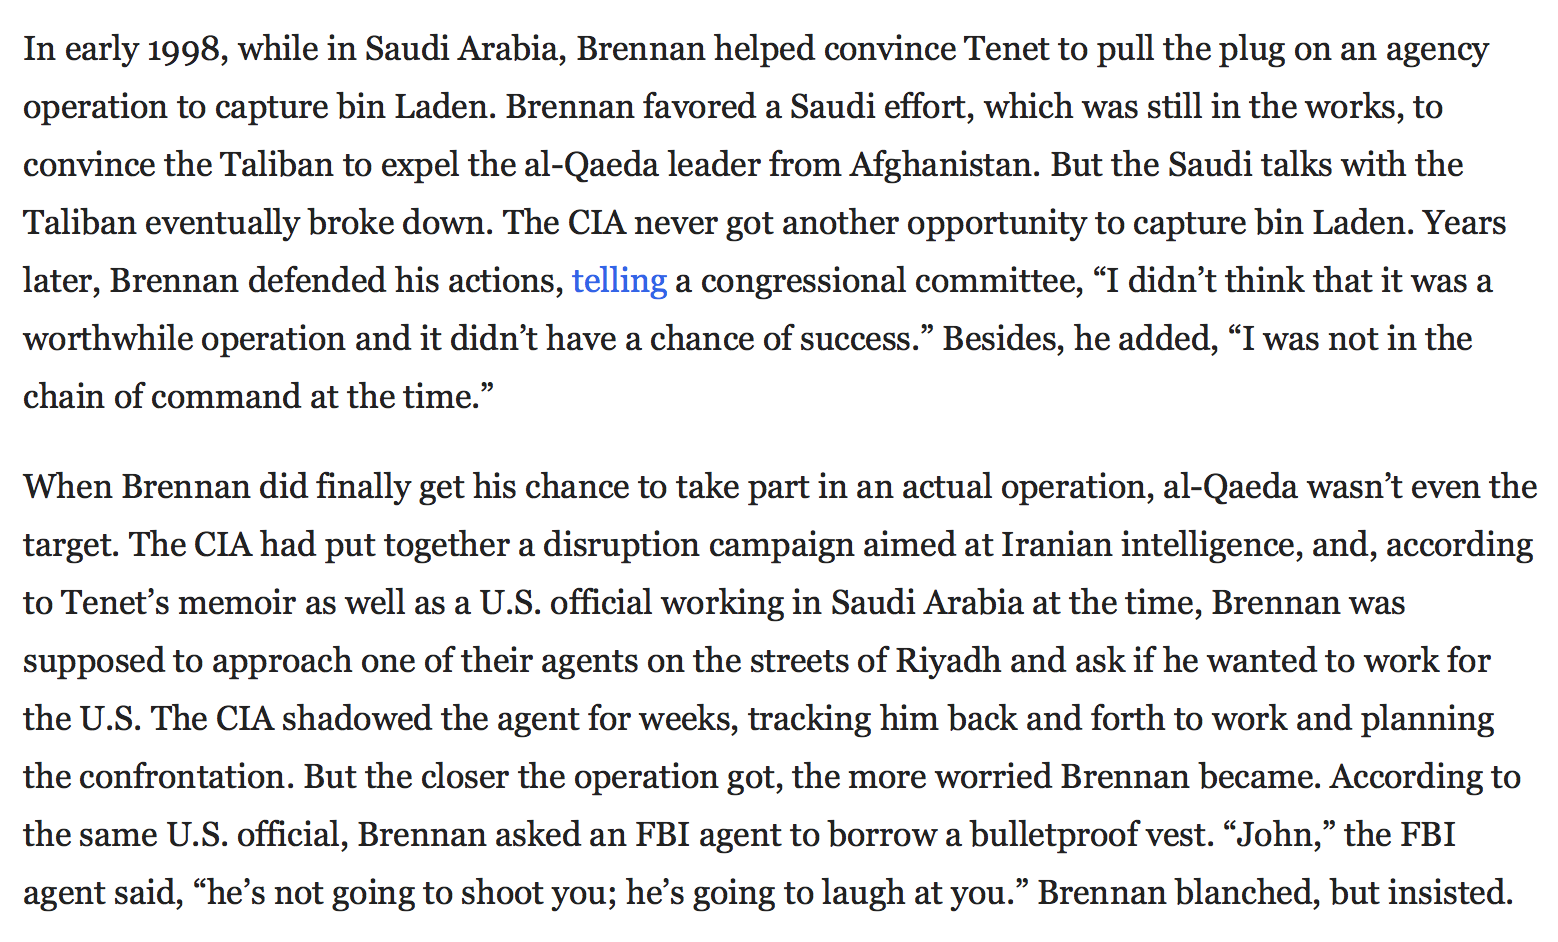 Brennan convinced Tenet not to take bin Laden